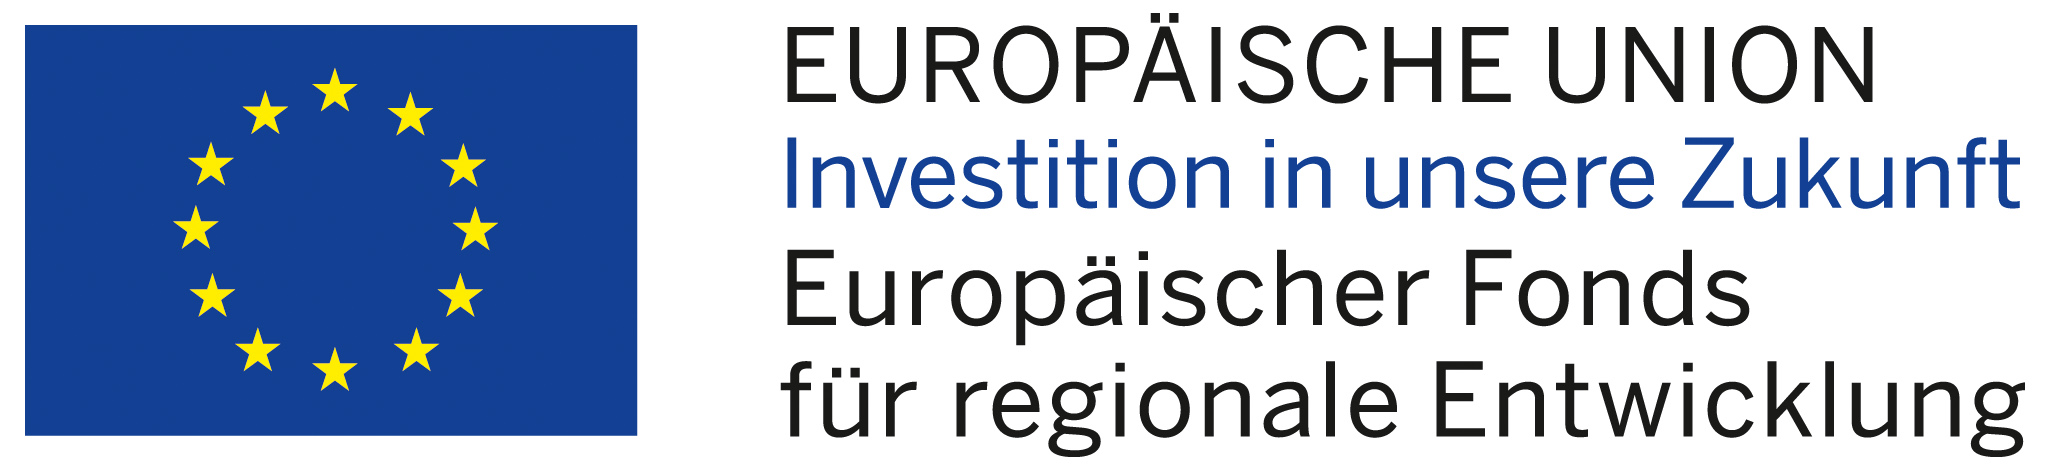 Logo Europäische Union. Investition in unsere Zukunft. Europäischer Fonds für regionale Entwicklung.